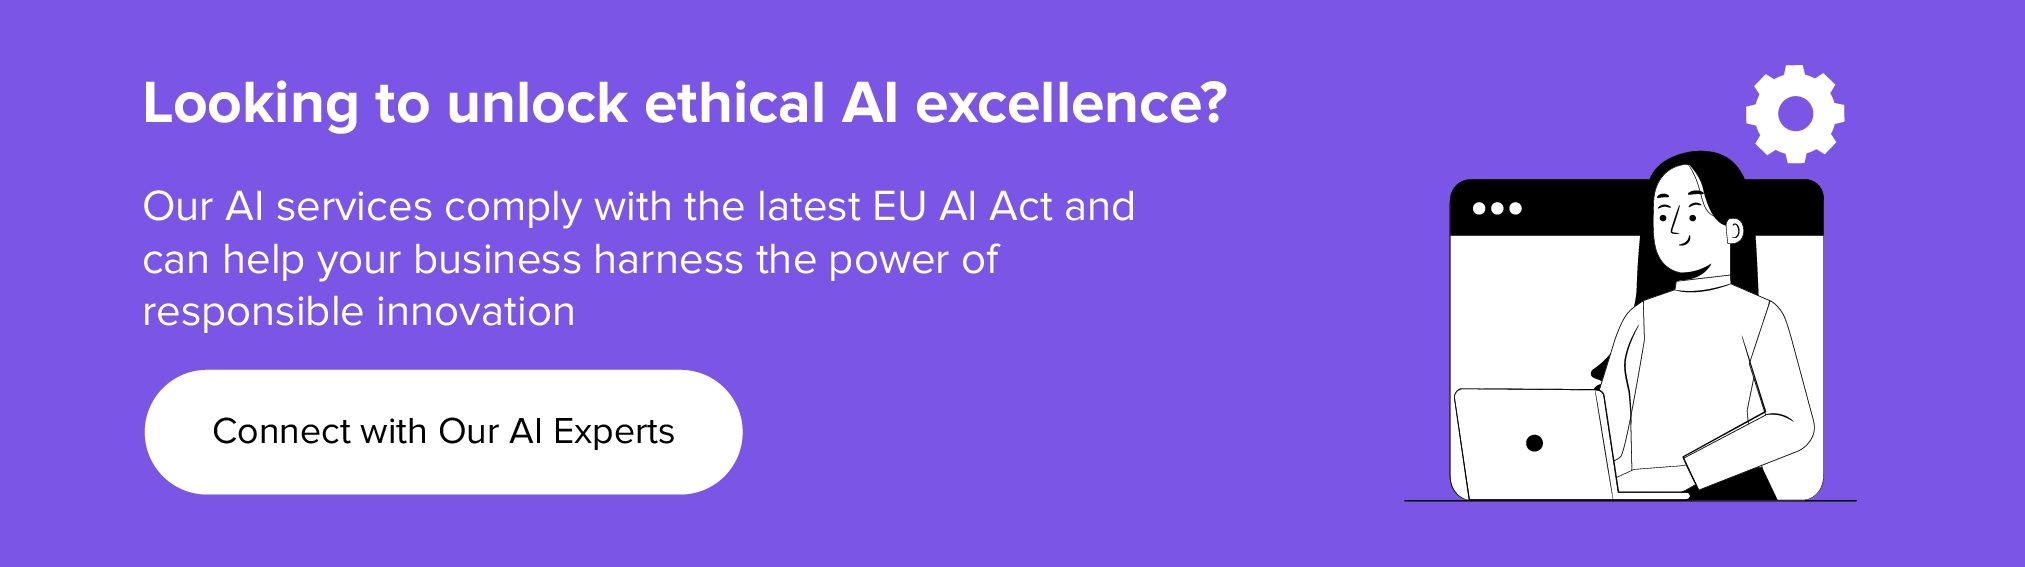 Collaborez avec nous pour débloquer l’excellence éthique de l’IA